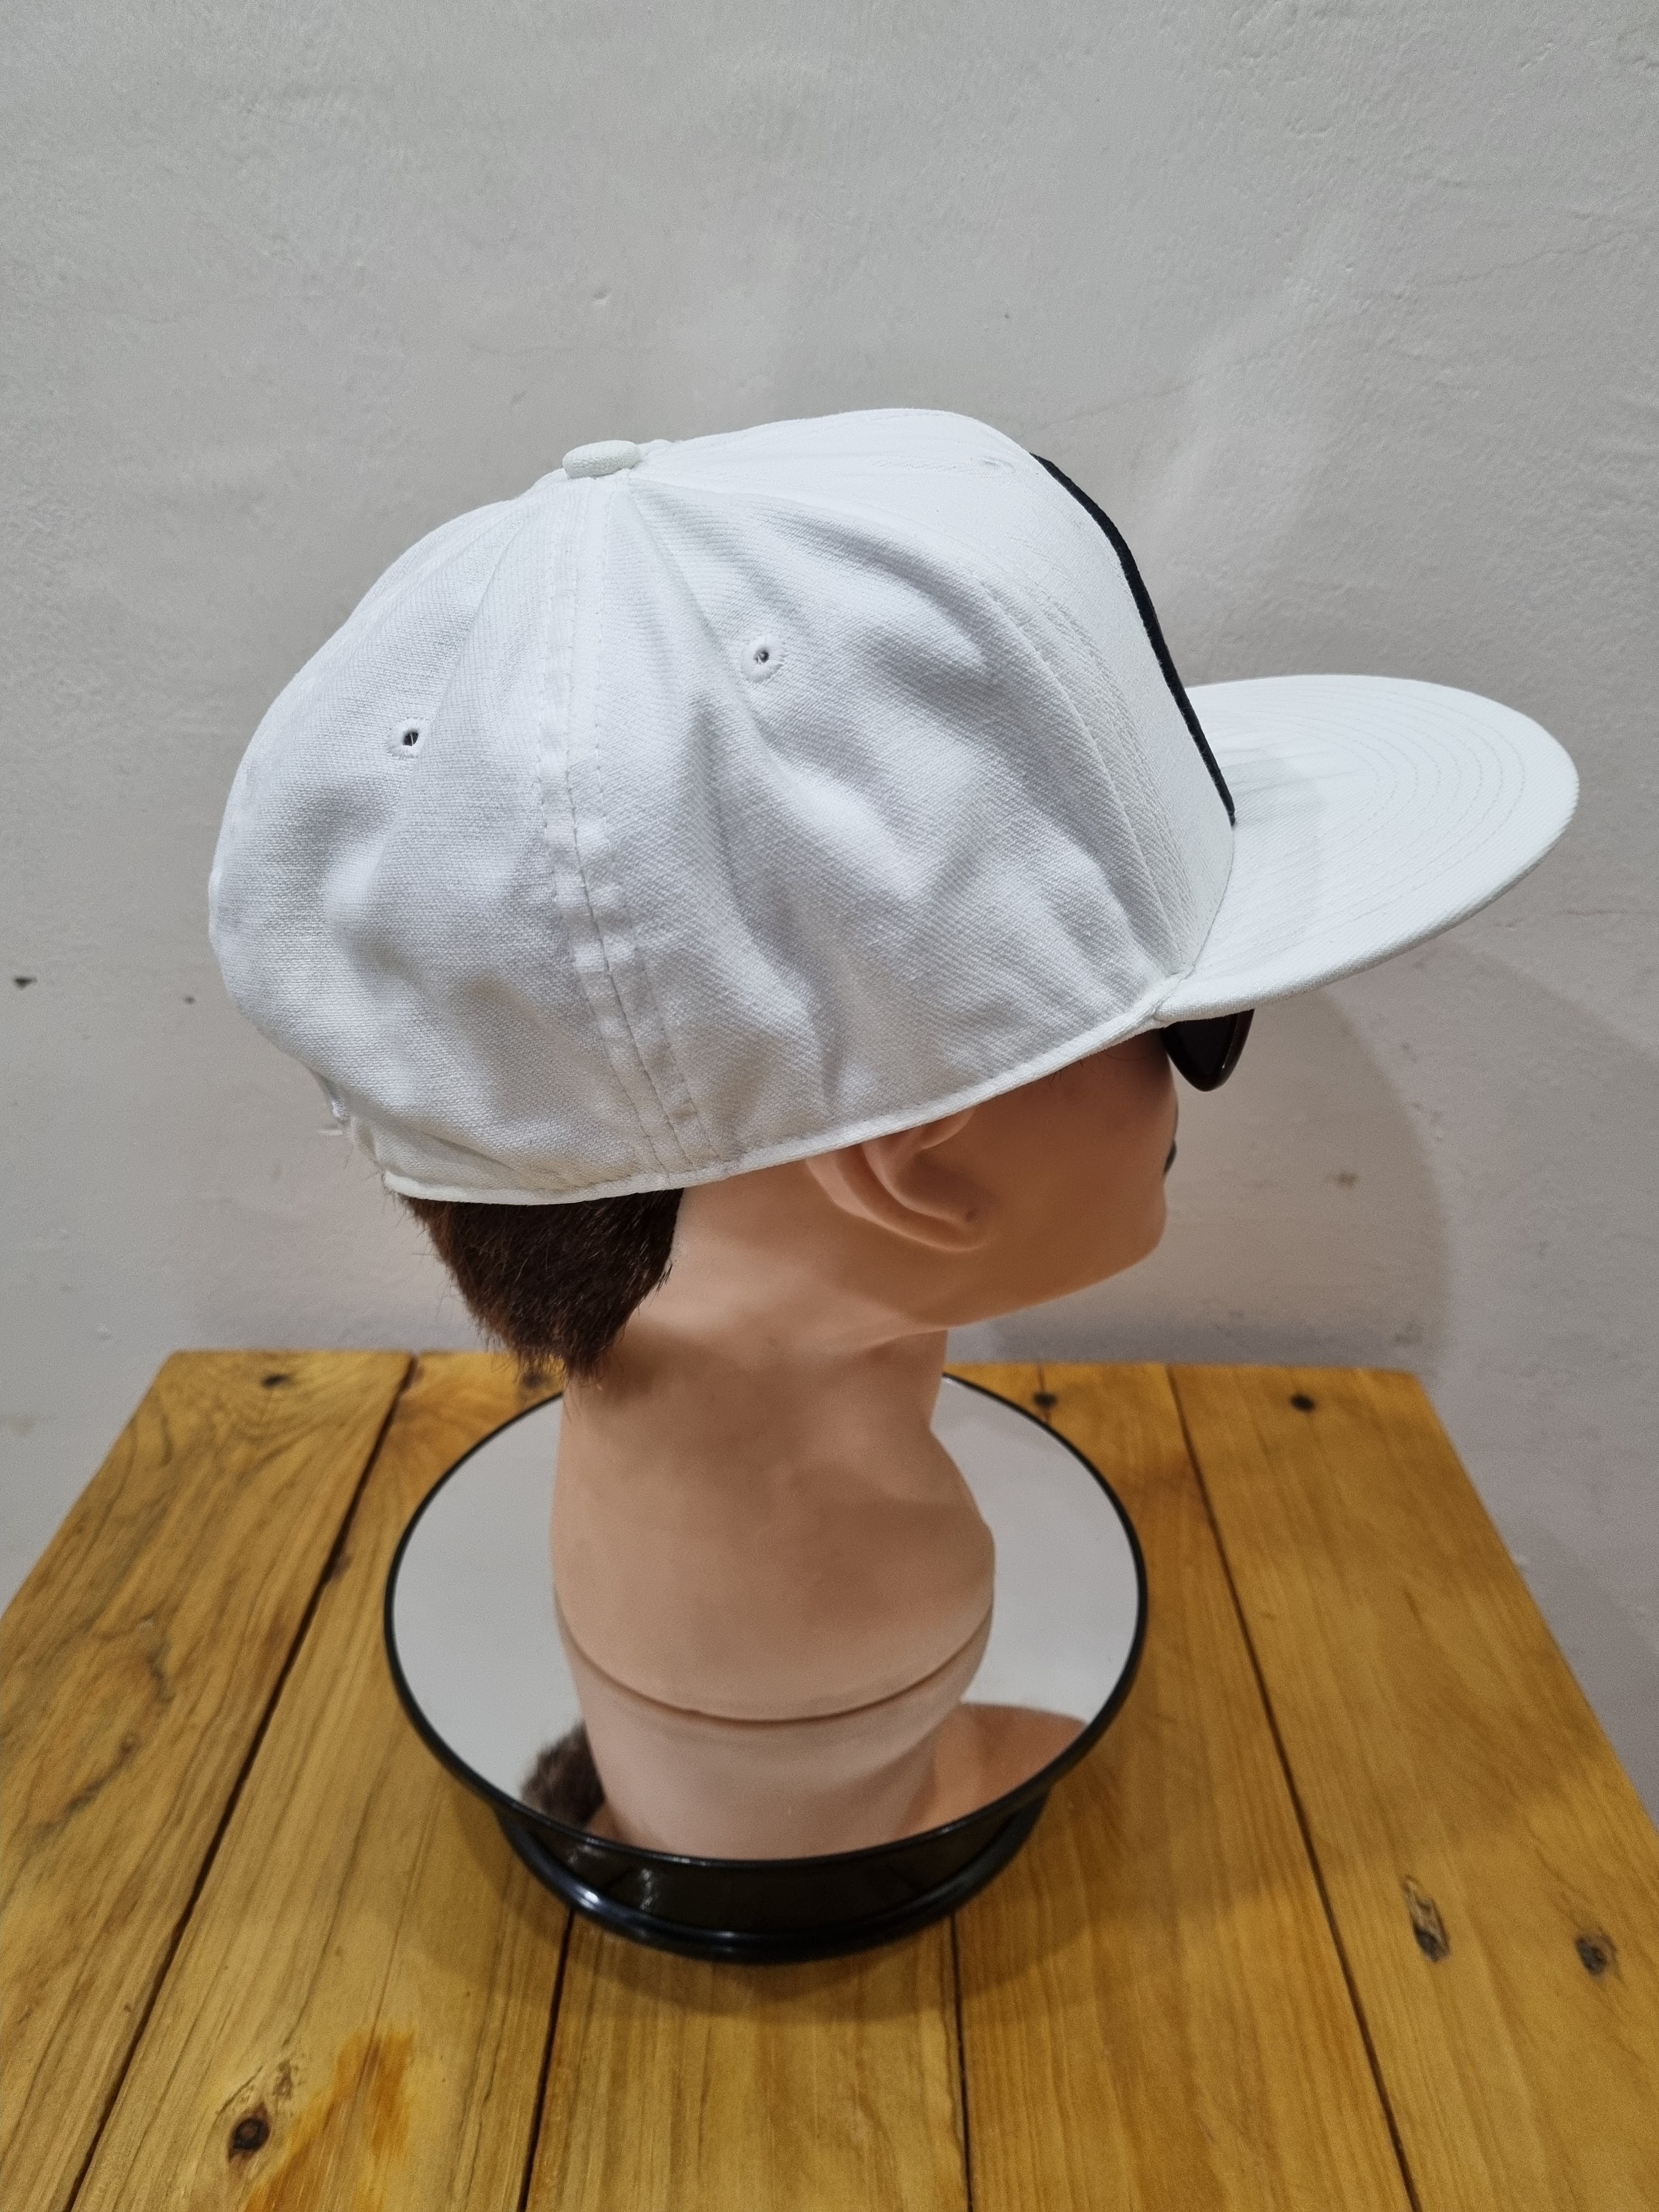 🔥FINAL PRICE DROP🔥Nike Vintage Hat x Street Fashion - 4